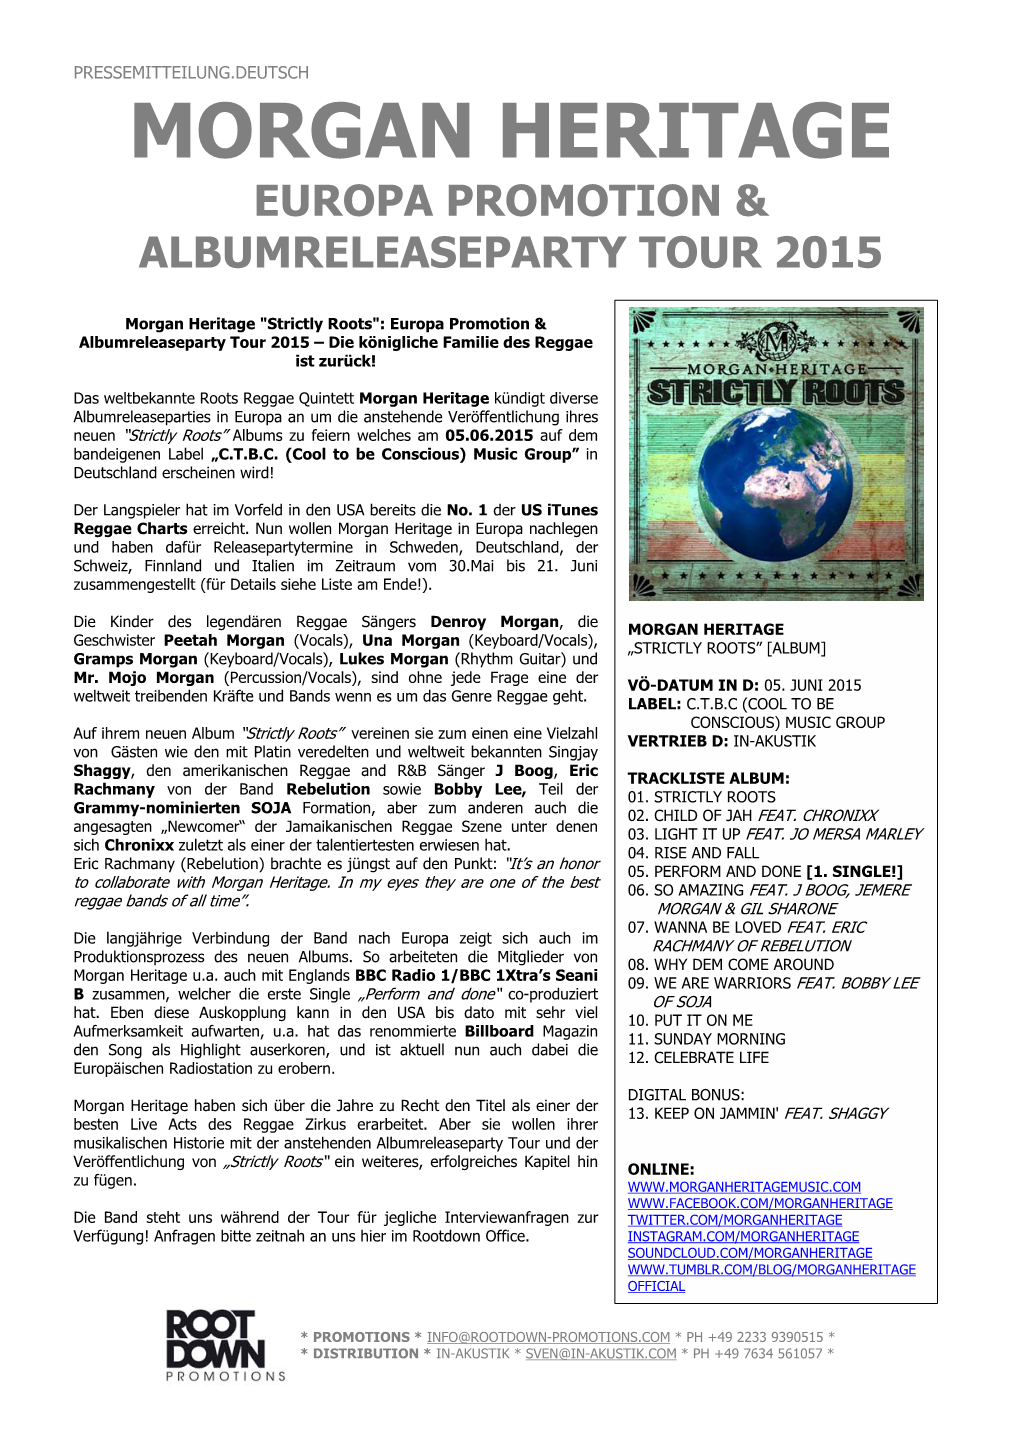 Morgan Heritage Europa Promotion & Albumreleaseparty Tour 2015